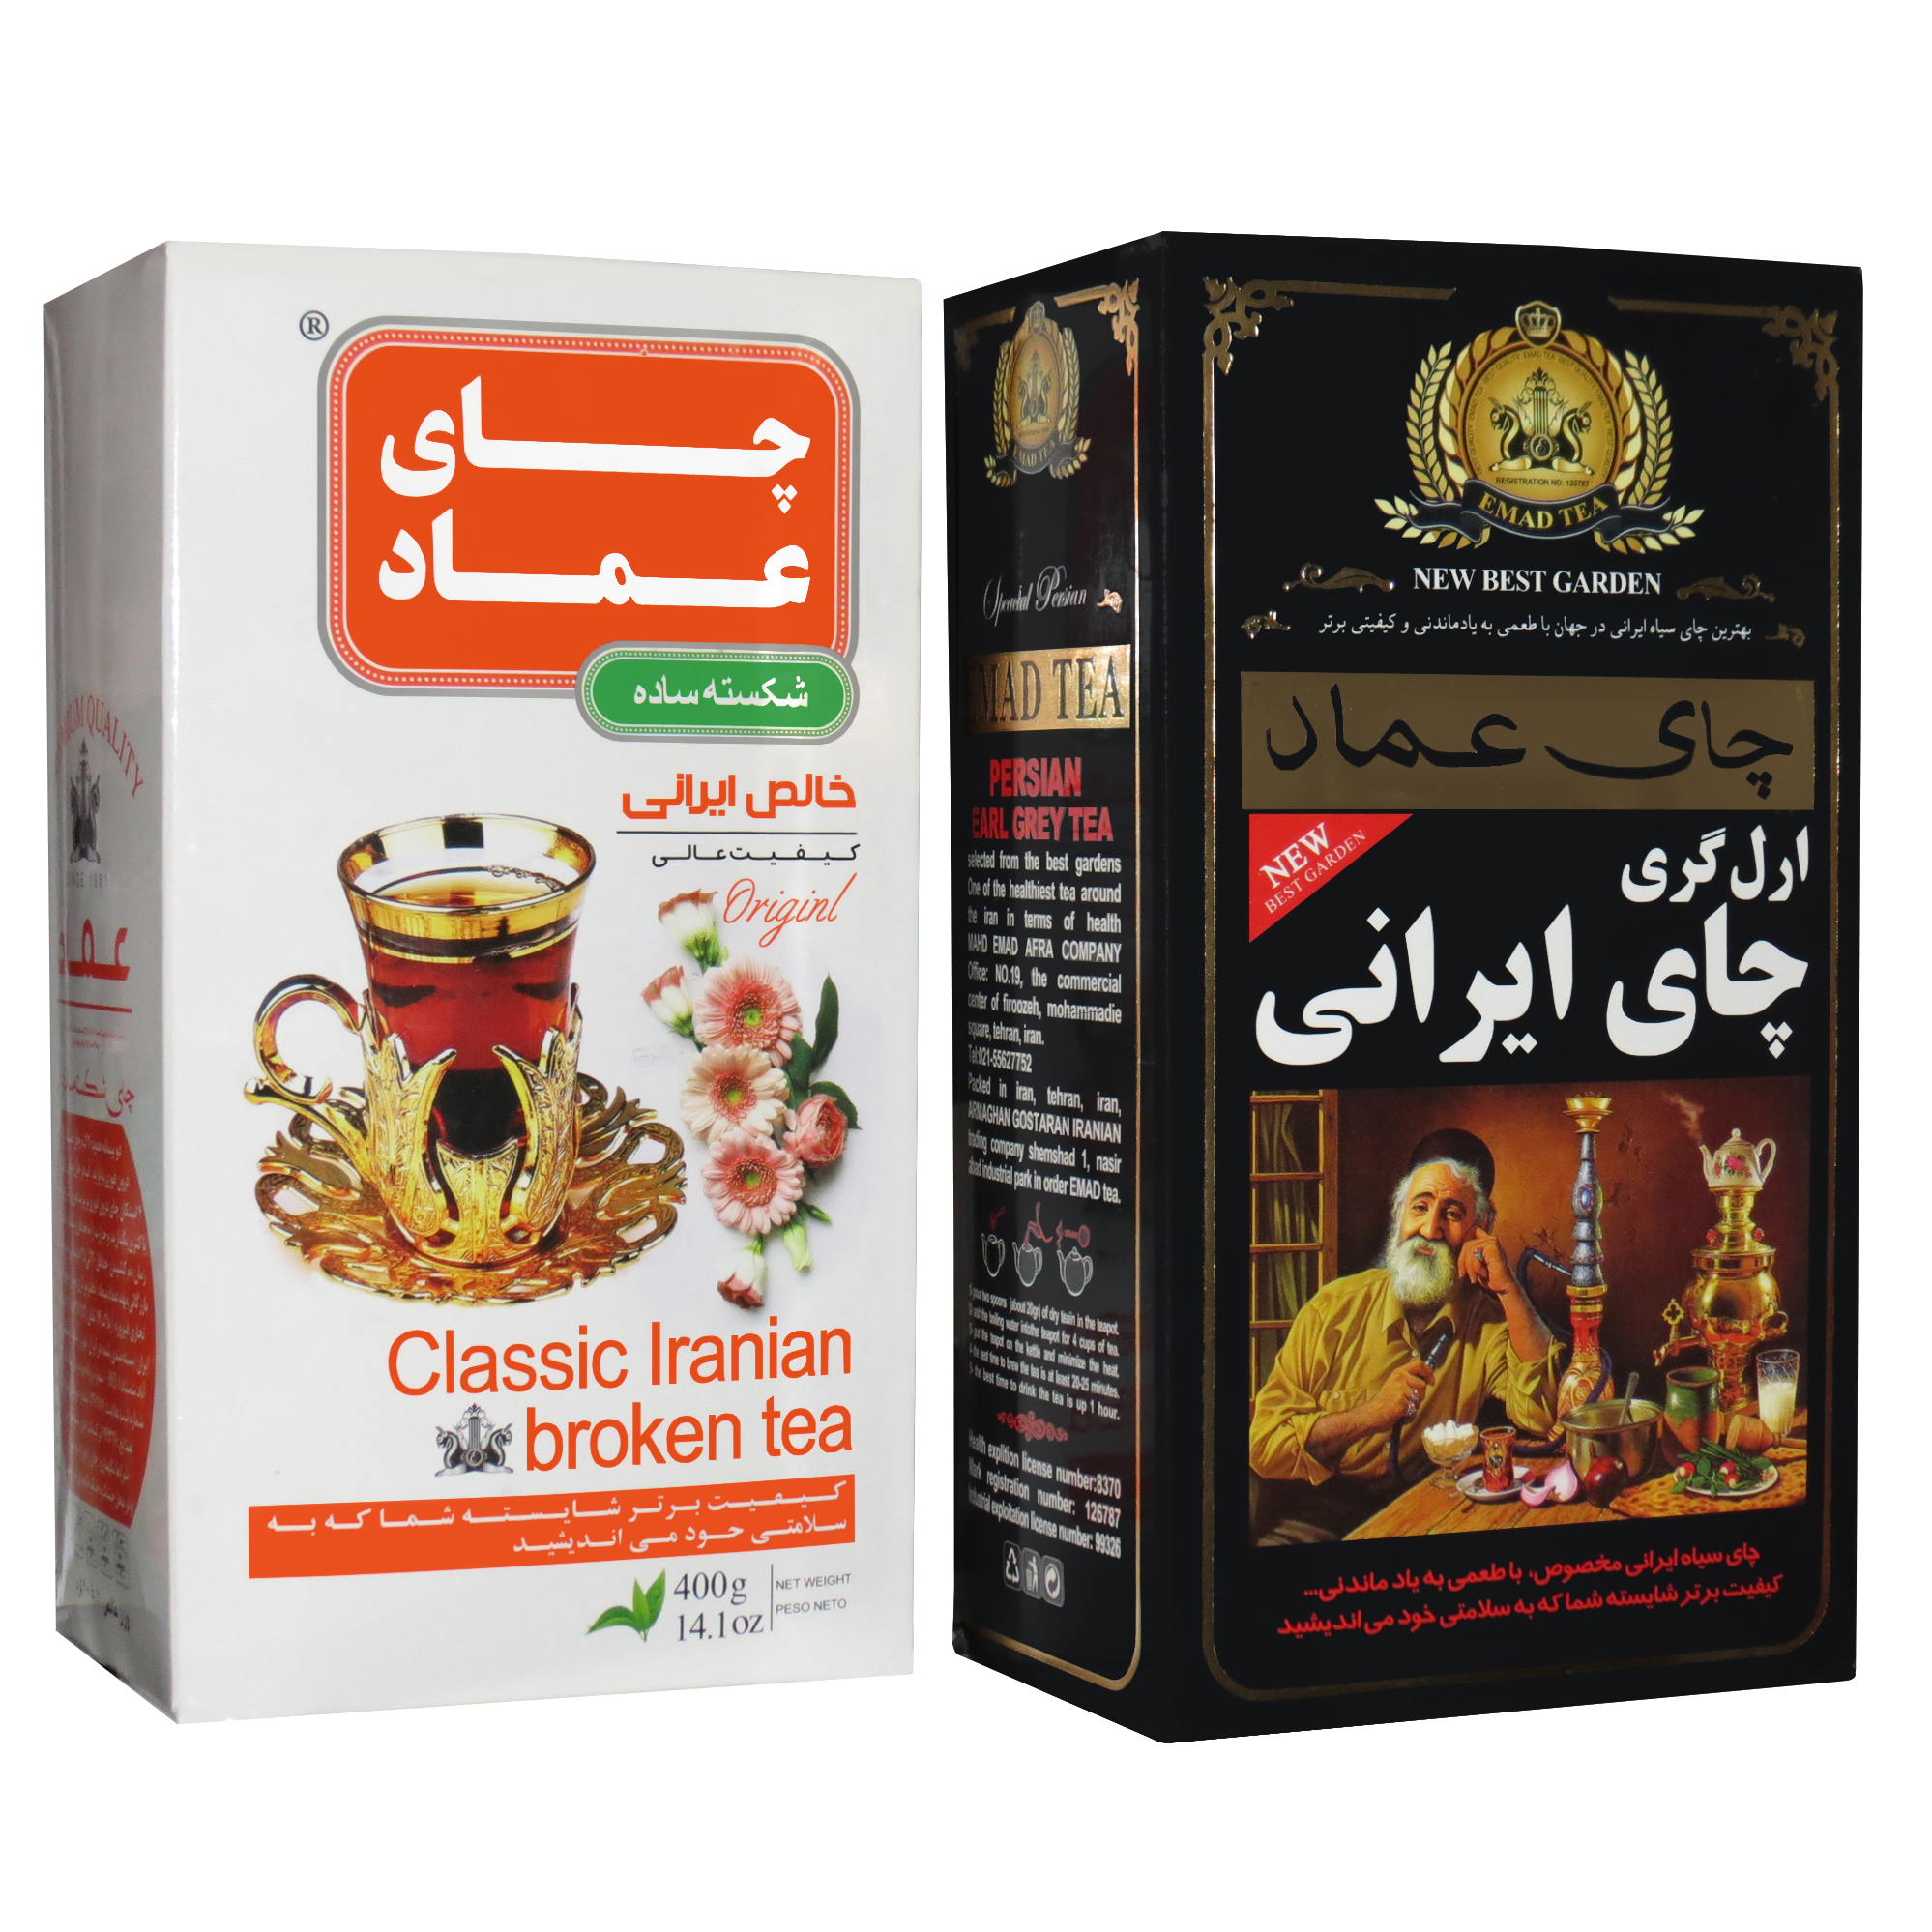  چای ایرانی ساده عماد - 400 گرم به همراه چای ایرانی معطر عماد - 400 گرم